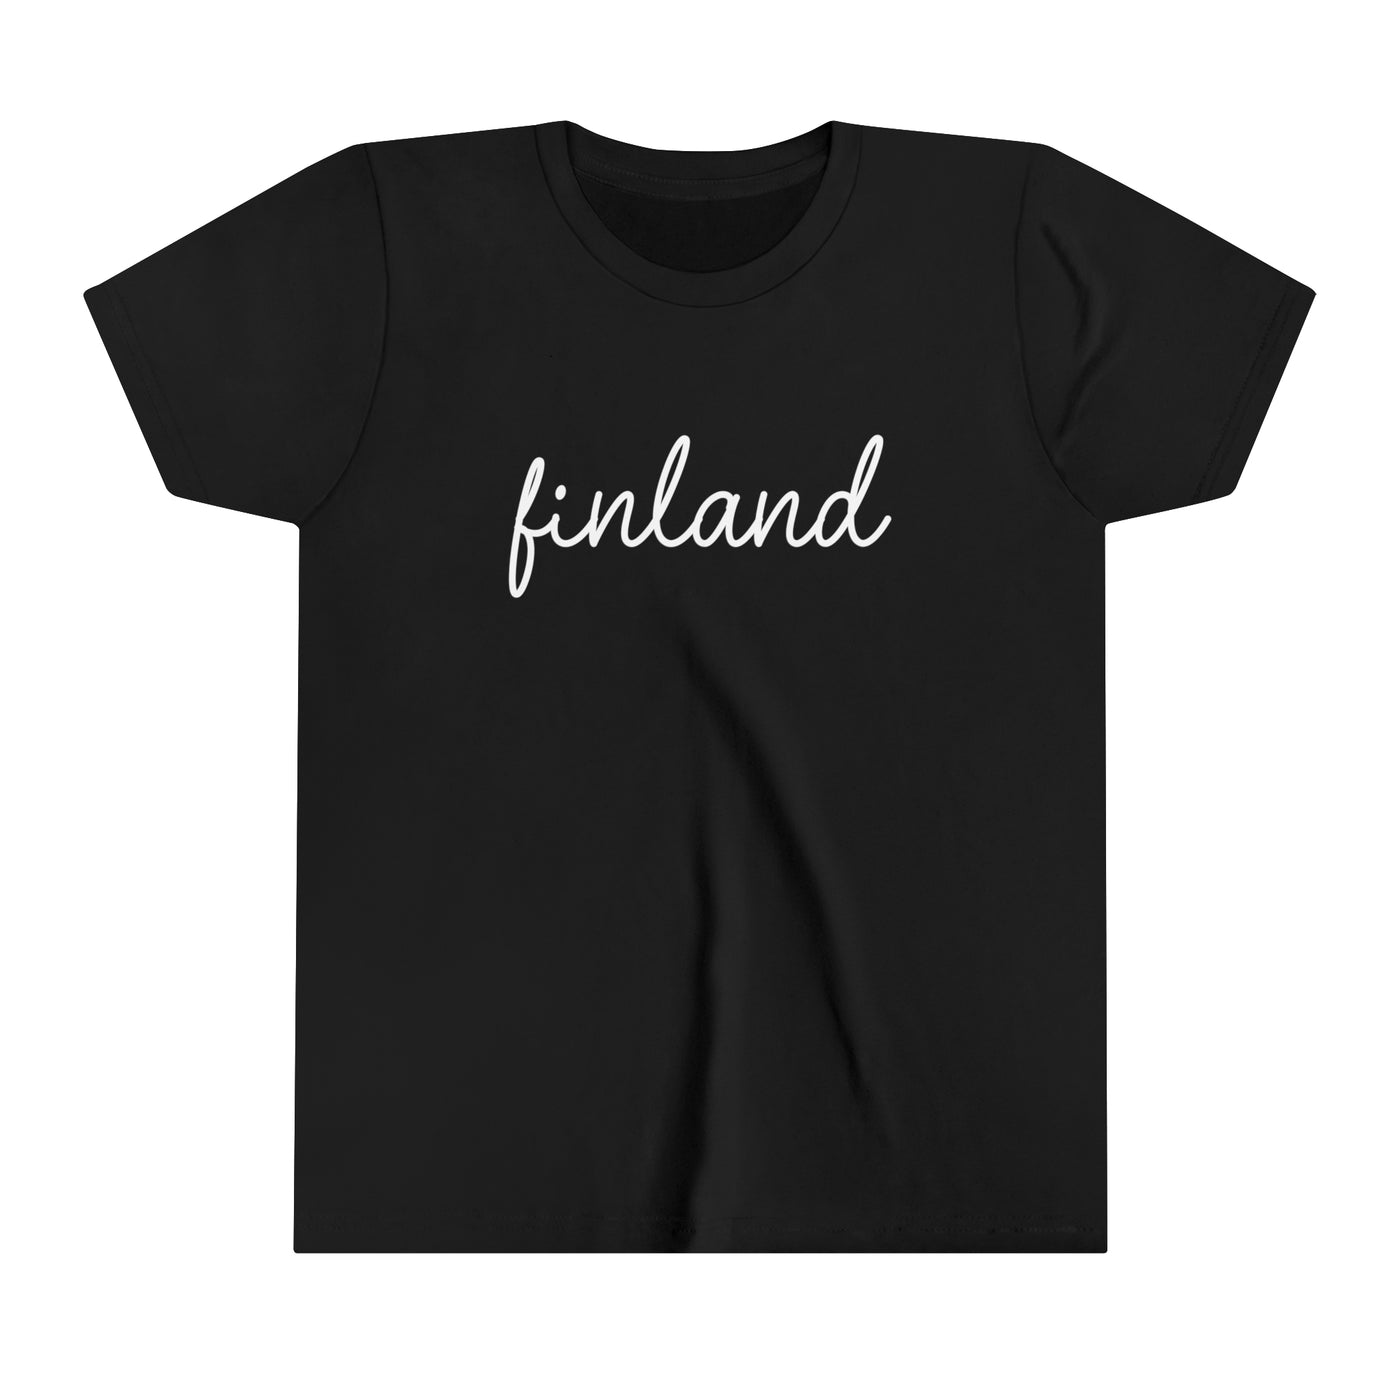 Finland Script Kids T-Shirt